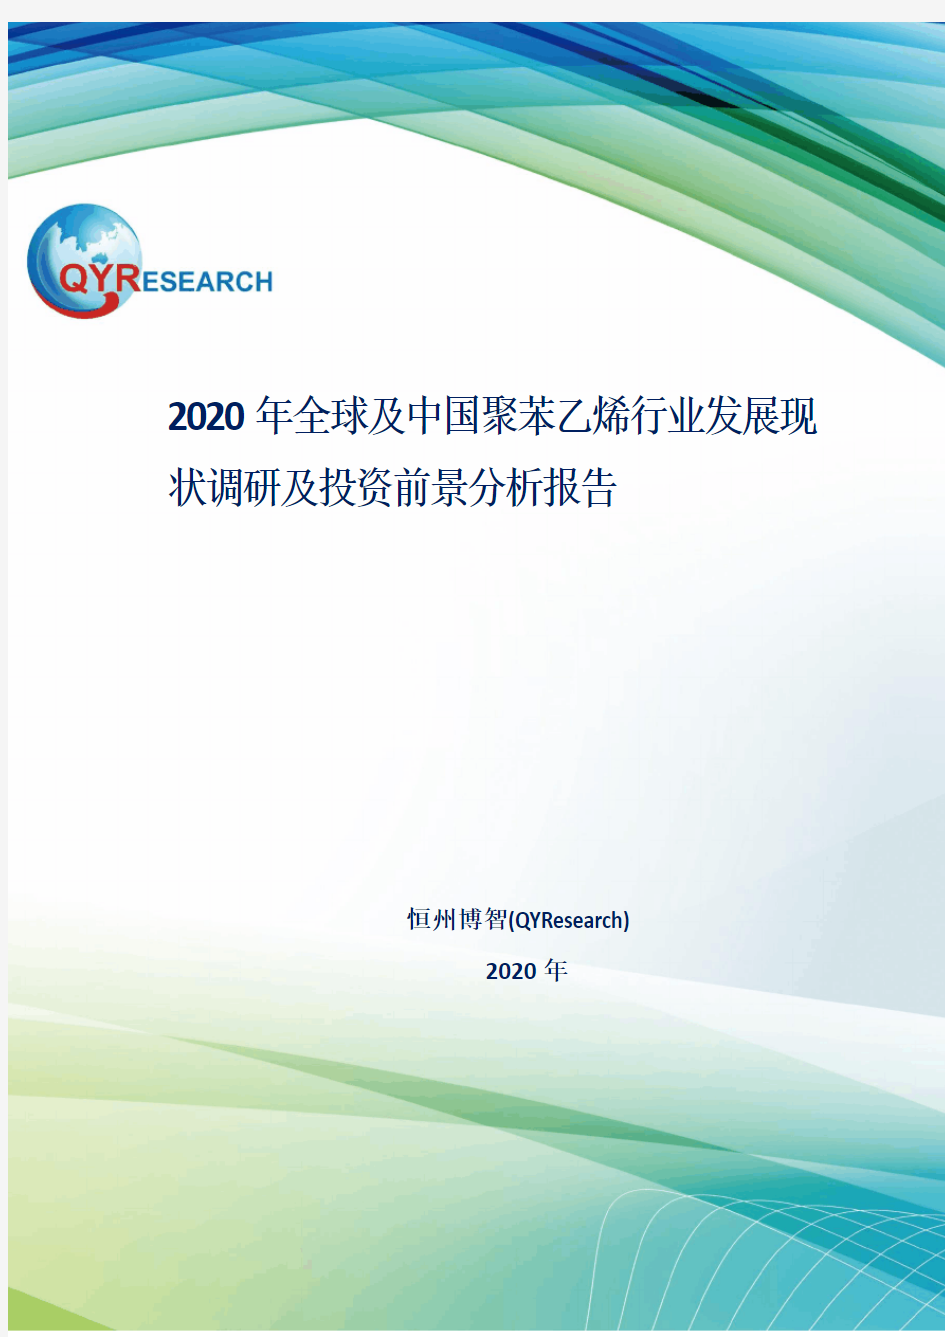 2020年全球及中国聚苯乙烯行业发展现状调研及投资前景分析报告